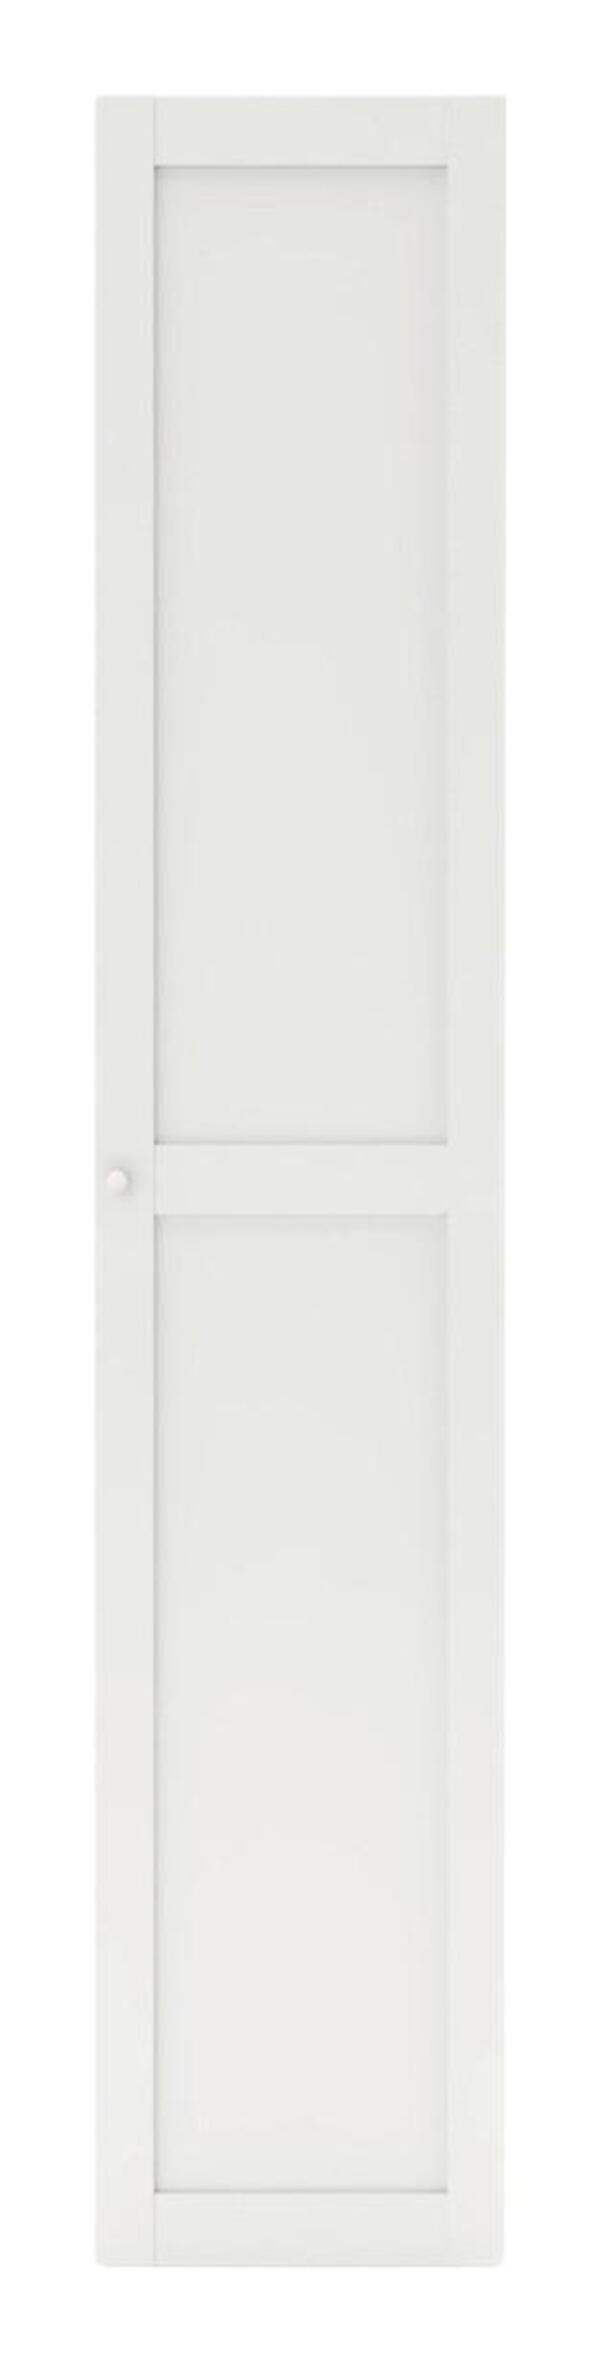 Bild 1 von Tür in Weiß